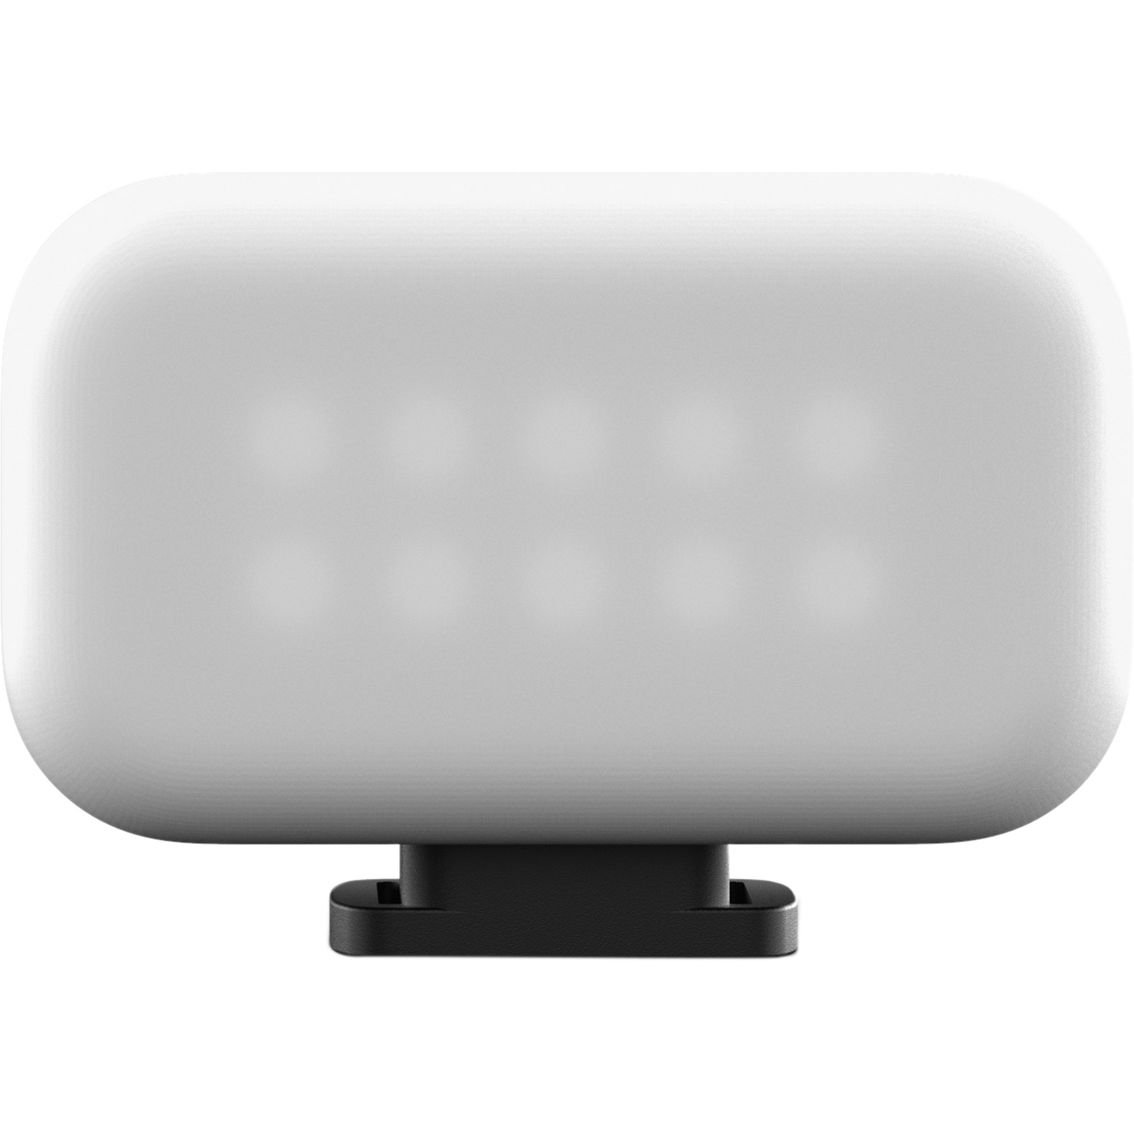 GoPro LED Light MOD - Image 3 of 3